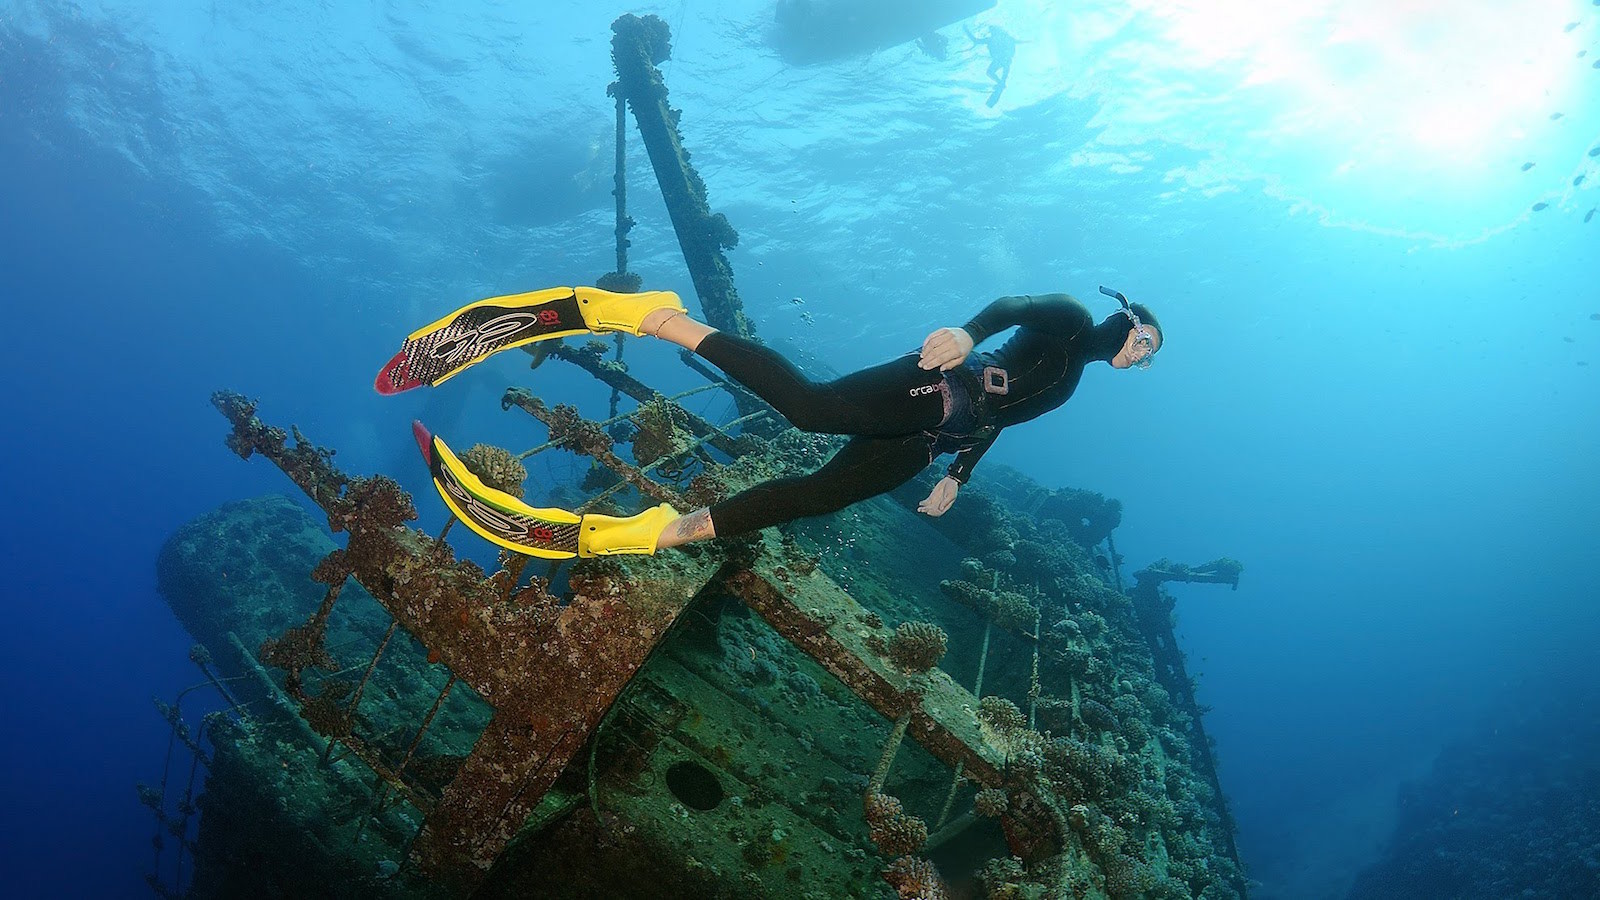 Дайвер на фоне греческого торгового судна GIANNIS D, затонувшего в Красном море. Моря и океаны, интересное, подводный мир